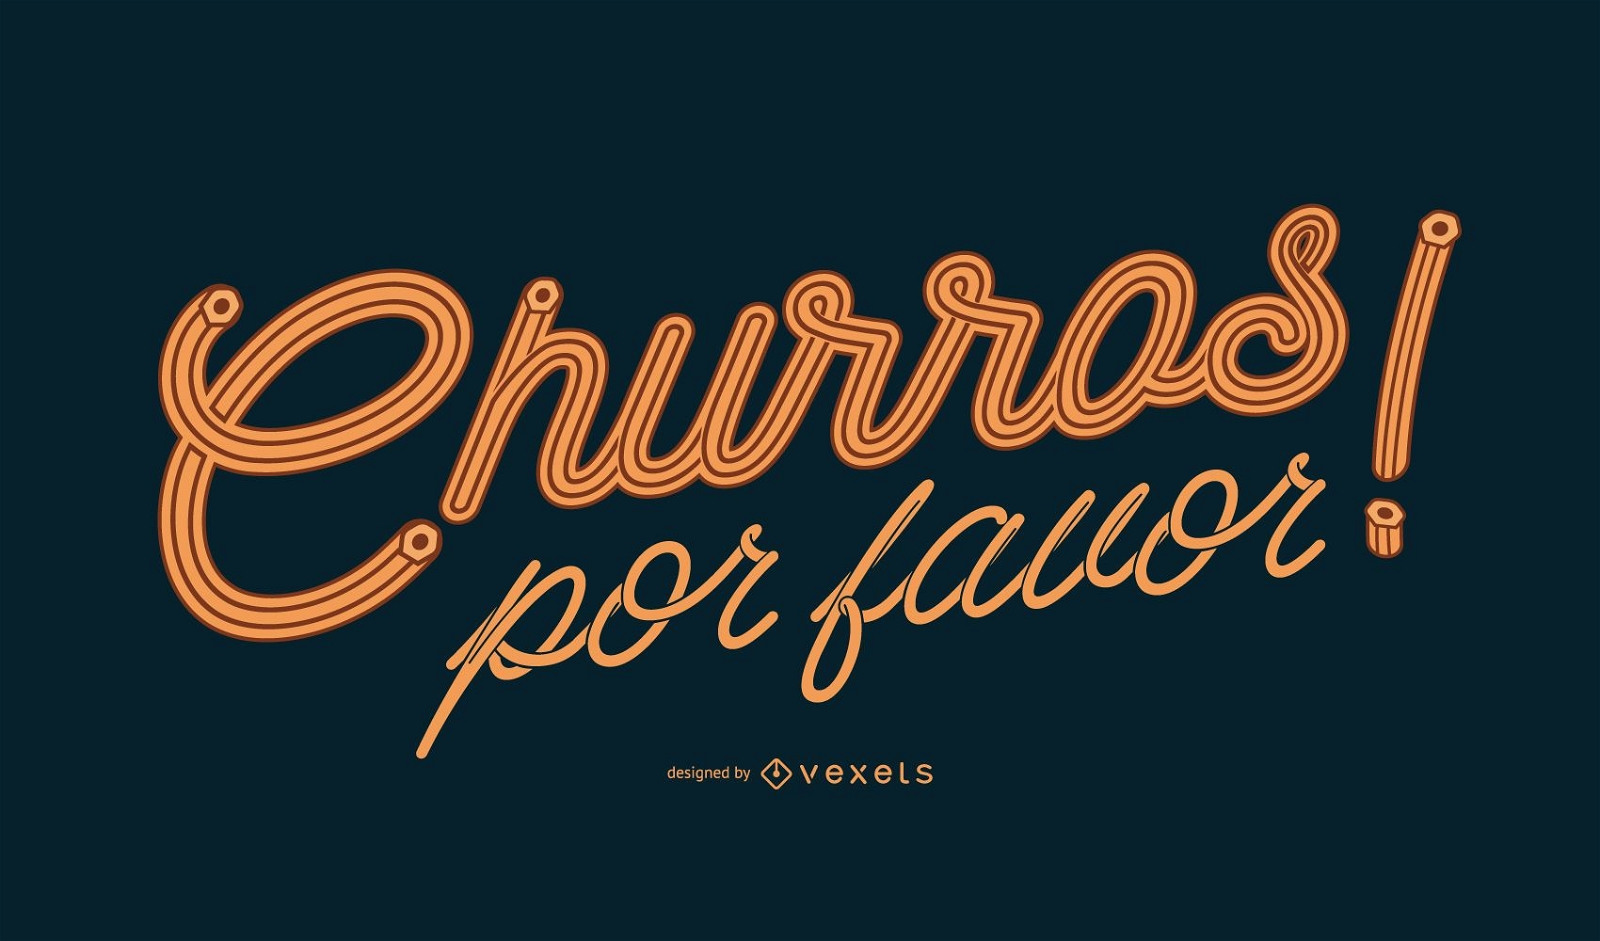 Projeto de letras em espanhol de Churros